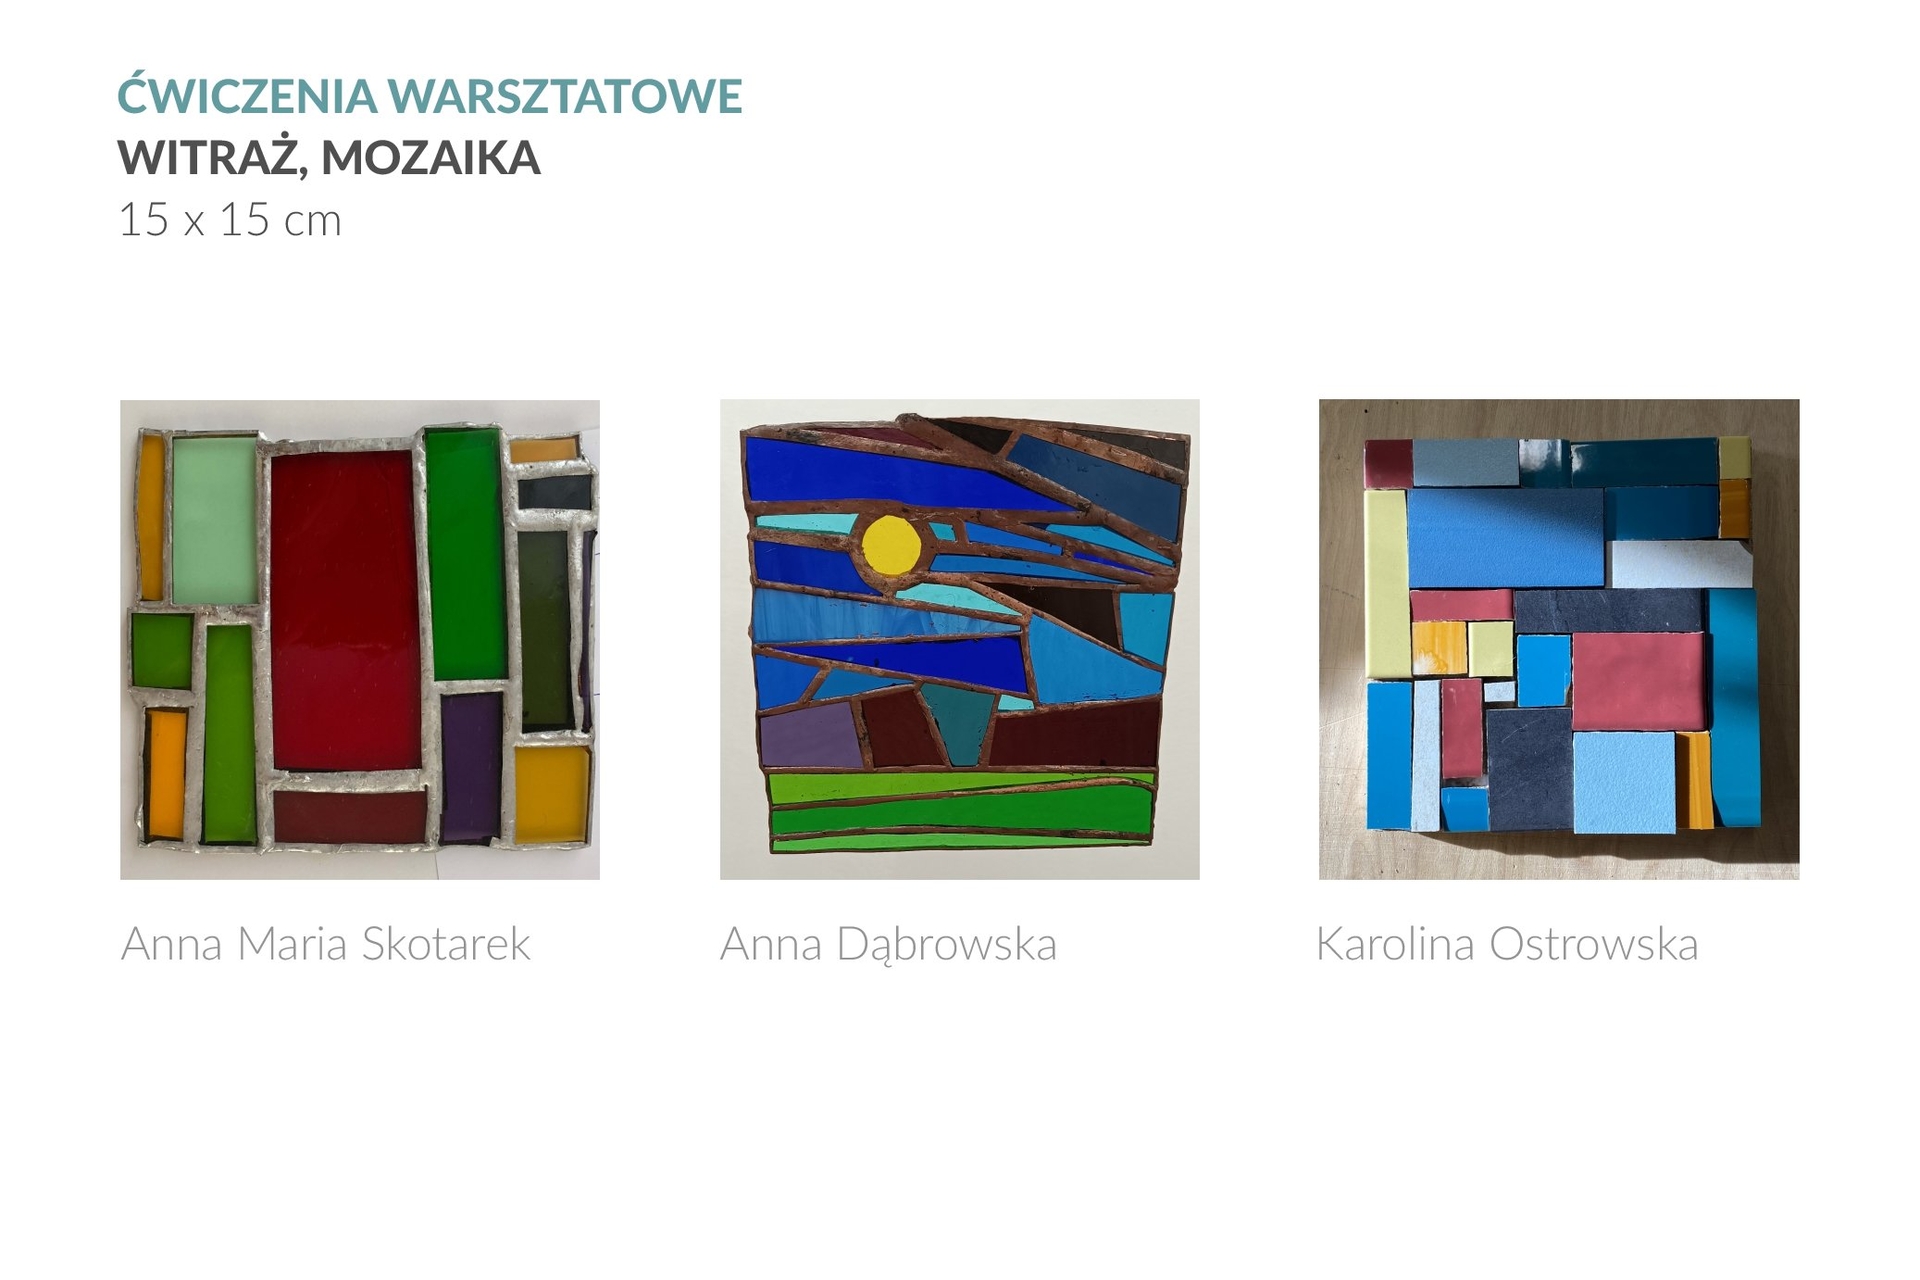 3 zdjęcia przedstawiają ćwiczenia warsztatowe w technikach witrażu i mozaiki, wykonane w formacie 15 x 15 cm. Z lewej strony znajduje się witraż autorstwa Anny Marii Skotarek, w środku witraż Anny Dąbrowskiej, a z lewej strony mozaika autorstwa Karoliny Ostrowskiej.